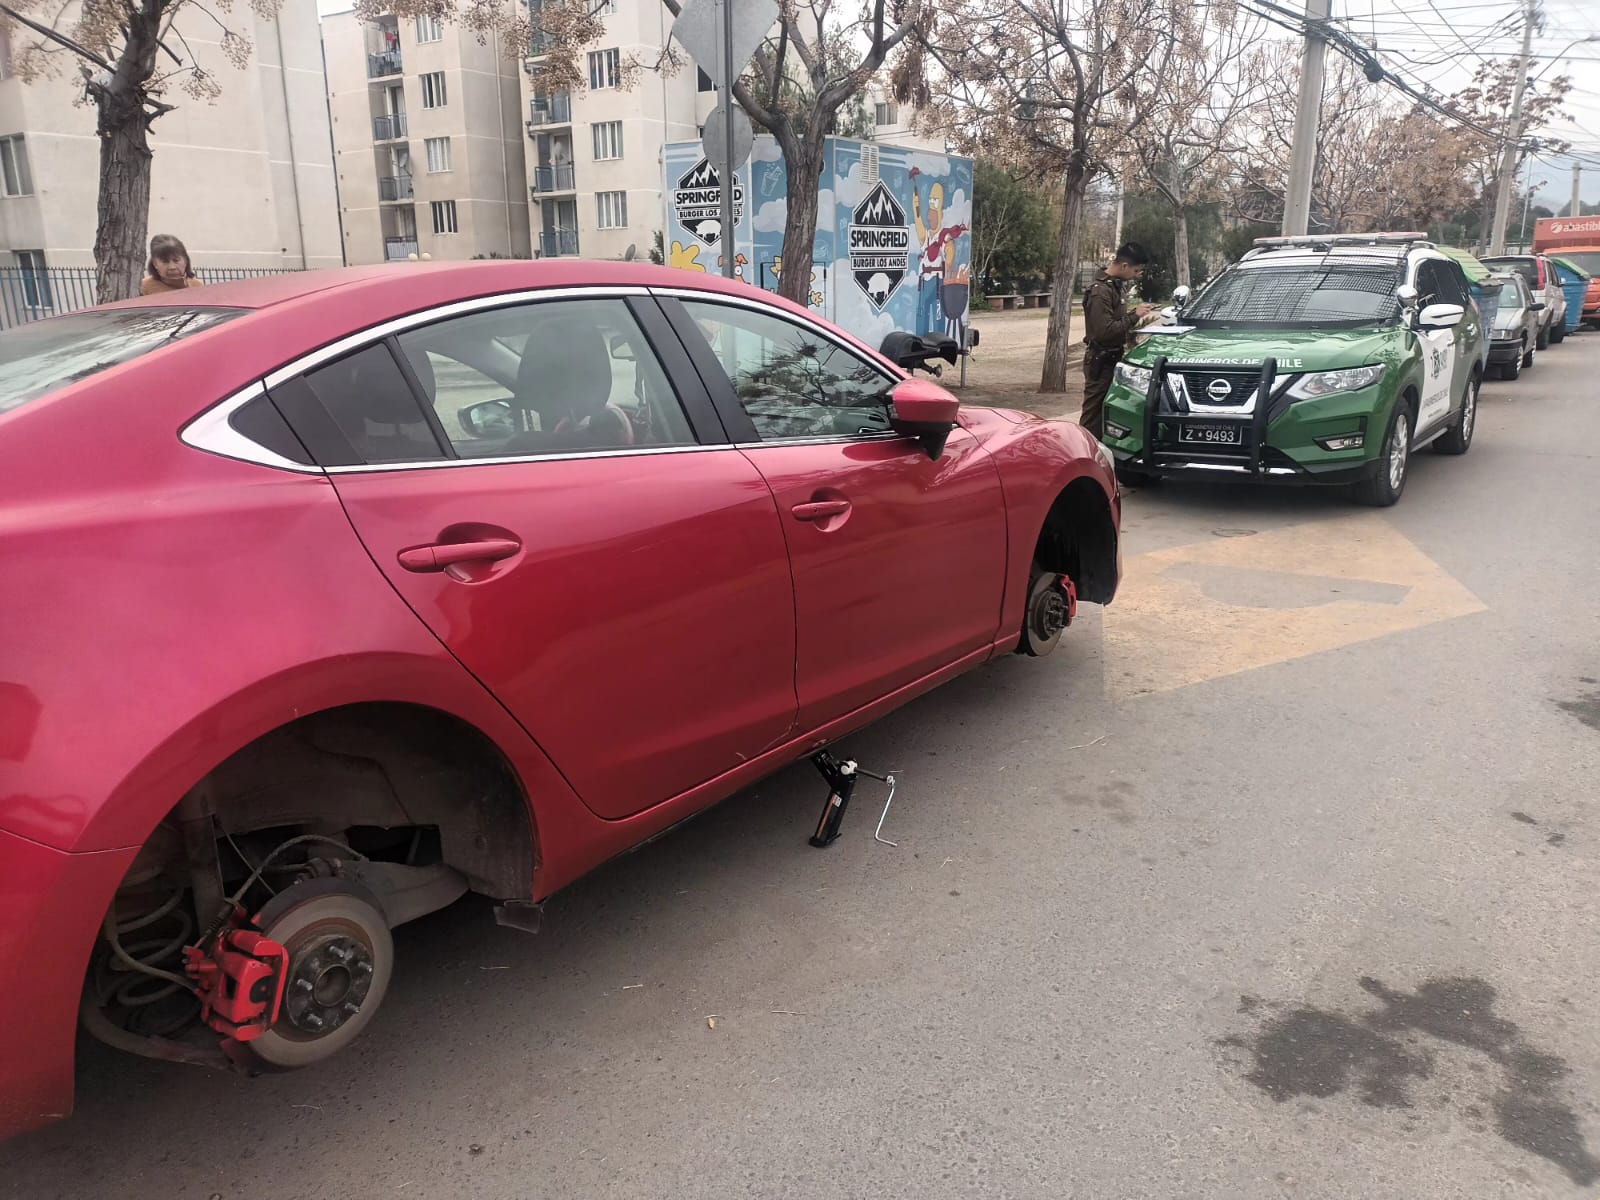 LOS ANDES: [VIDEO] Desconocidos roban ruedas a un auto estacionado en Villa Hermanos Maristas